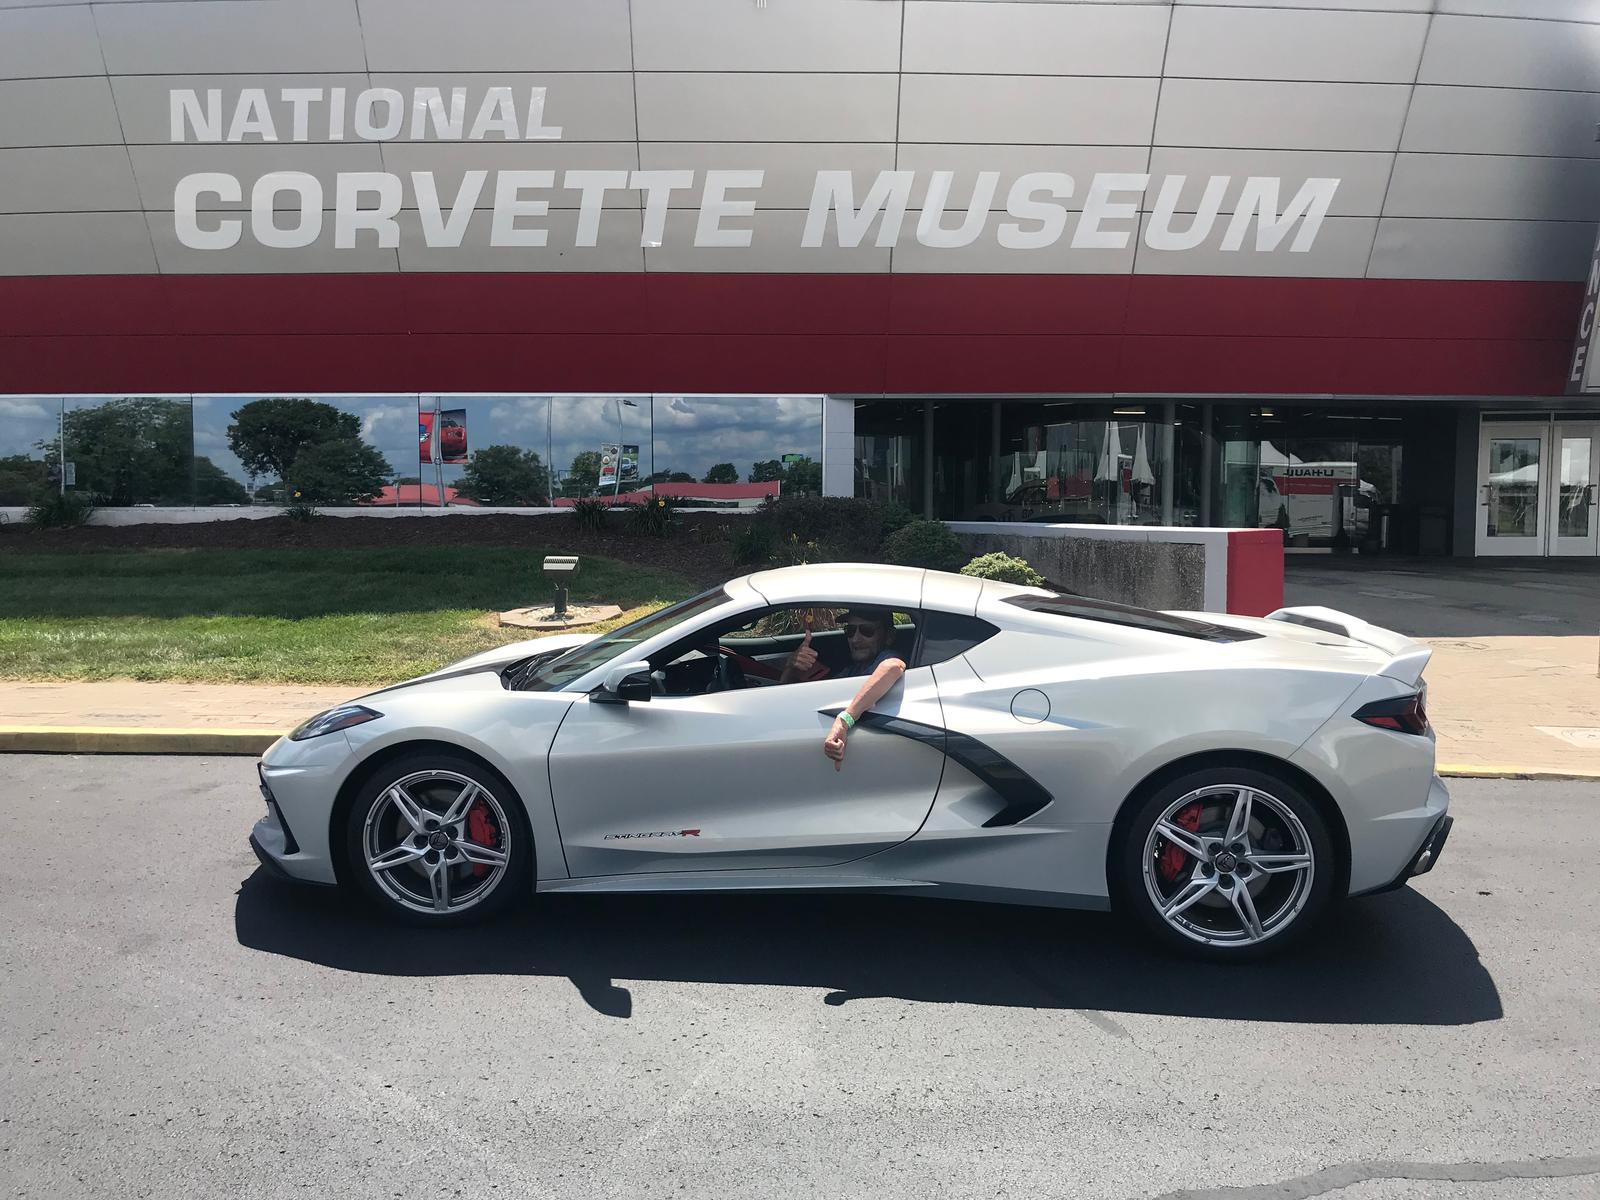 2021 corvette for sale